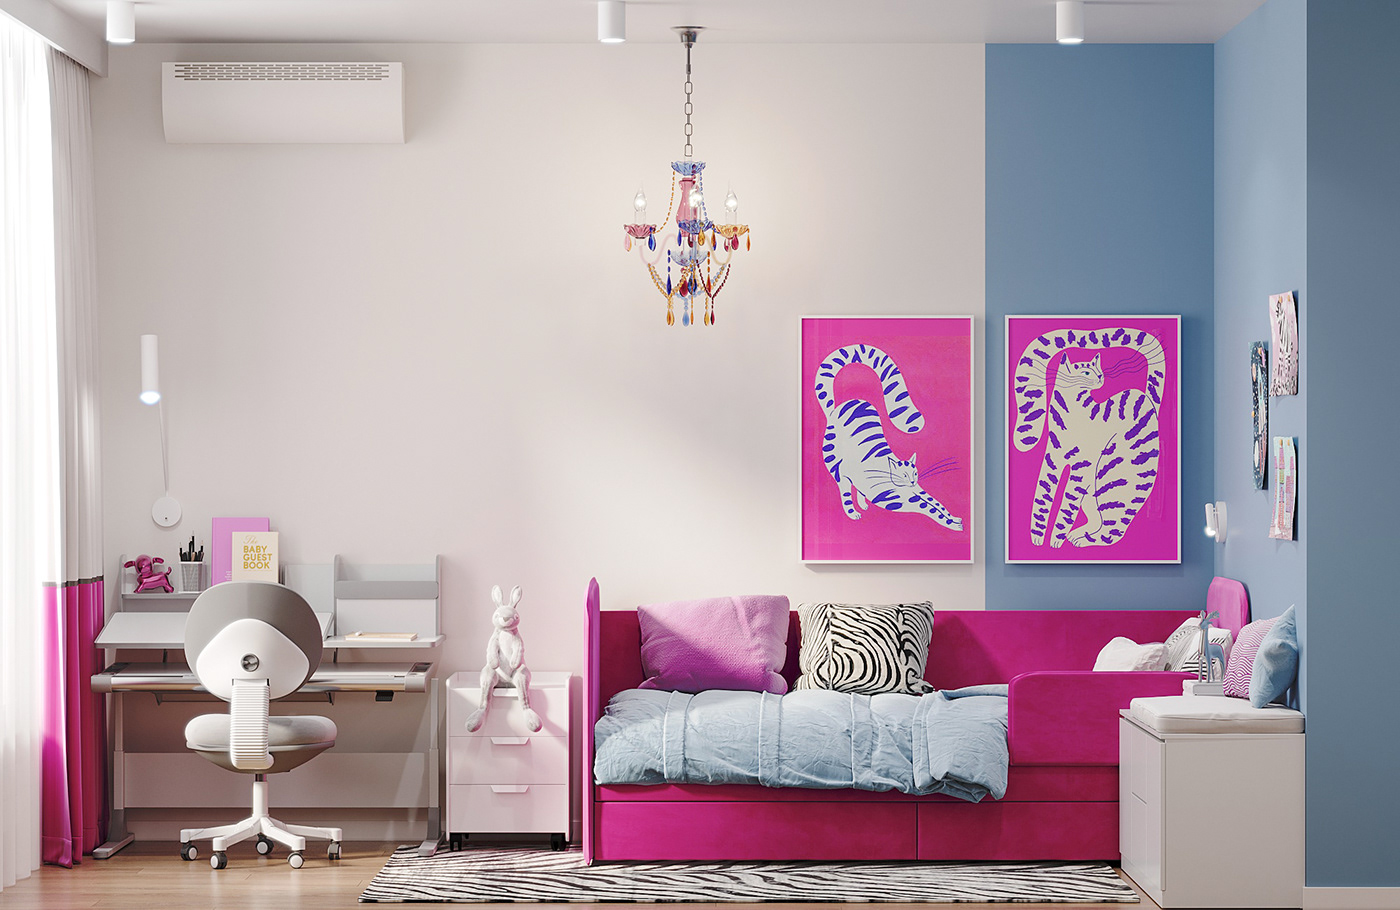 kidsroom Interior design 3ds max Render visualization interior design  corona bright fuchsia